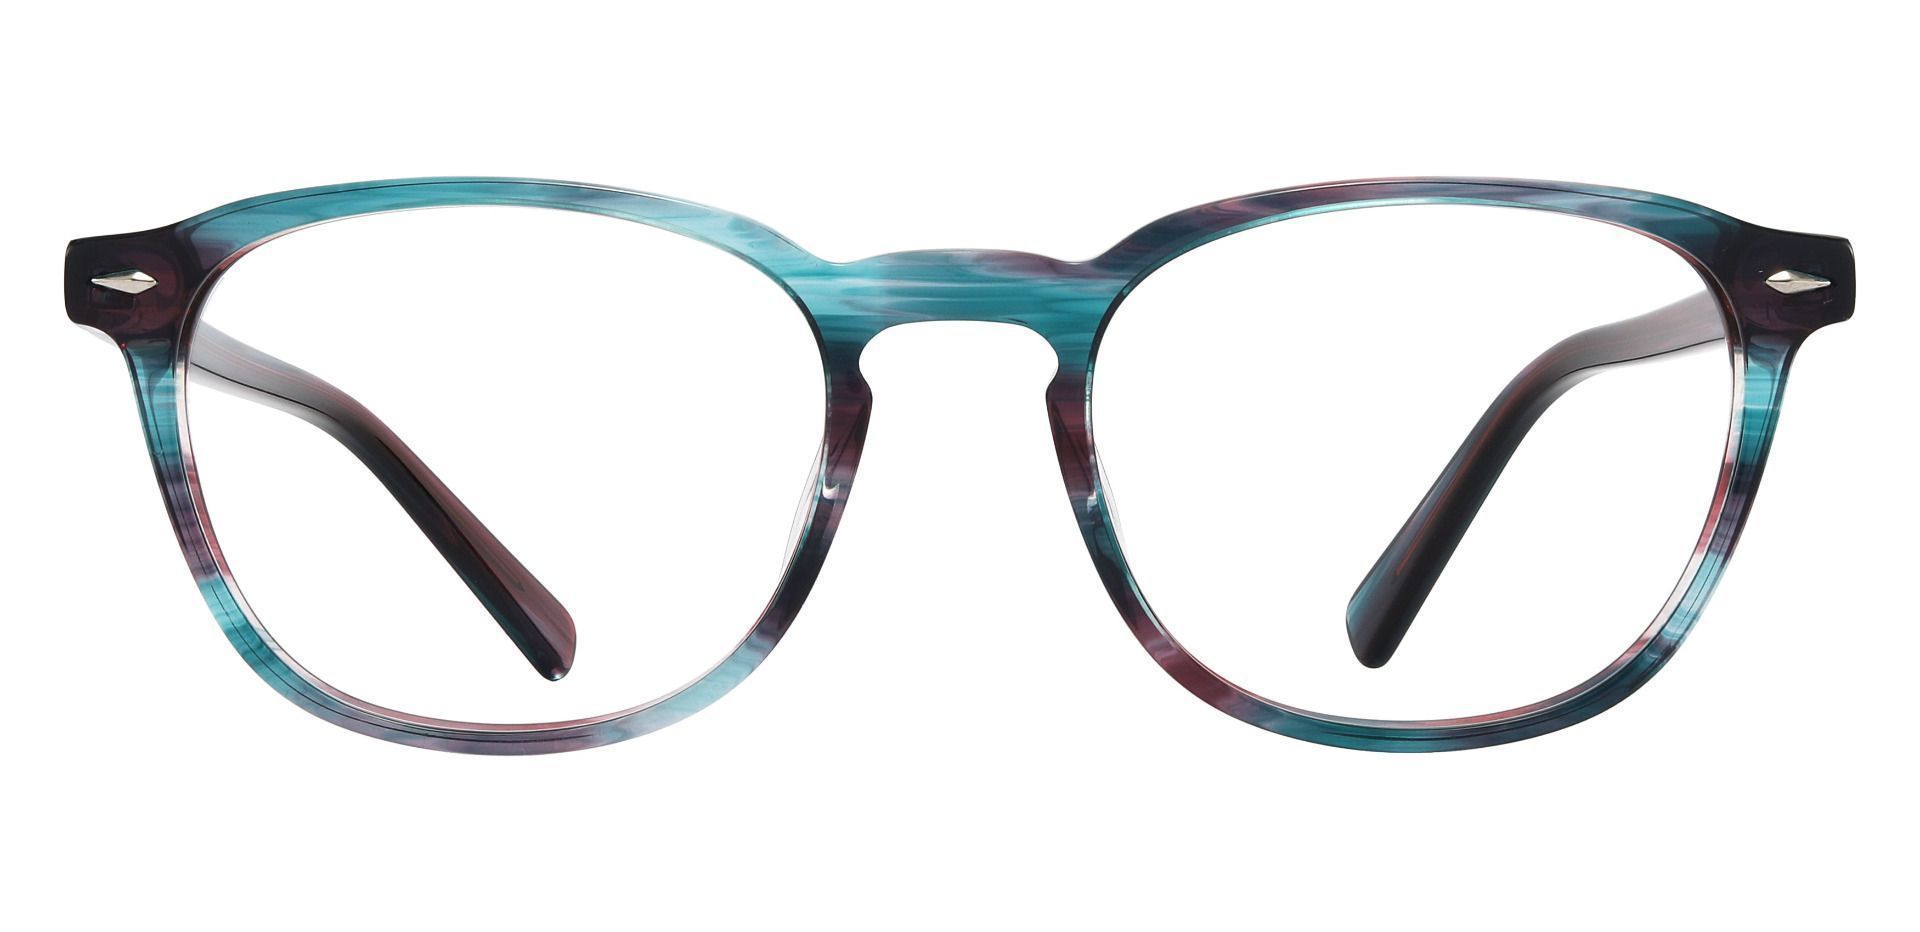 Marilla Oval Prescription Glasses - Blue